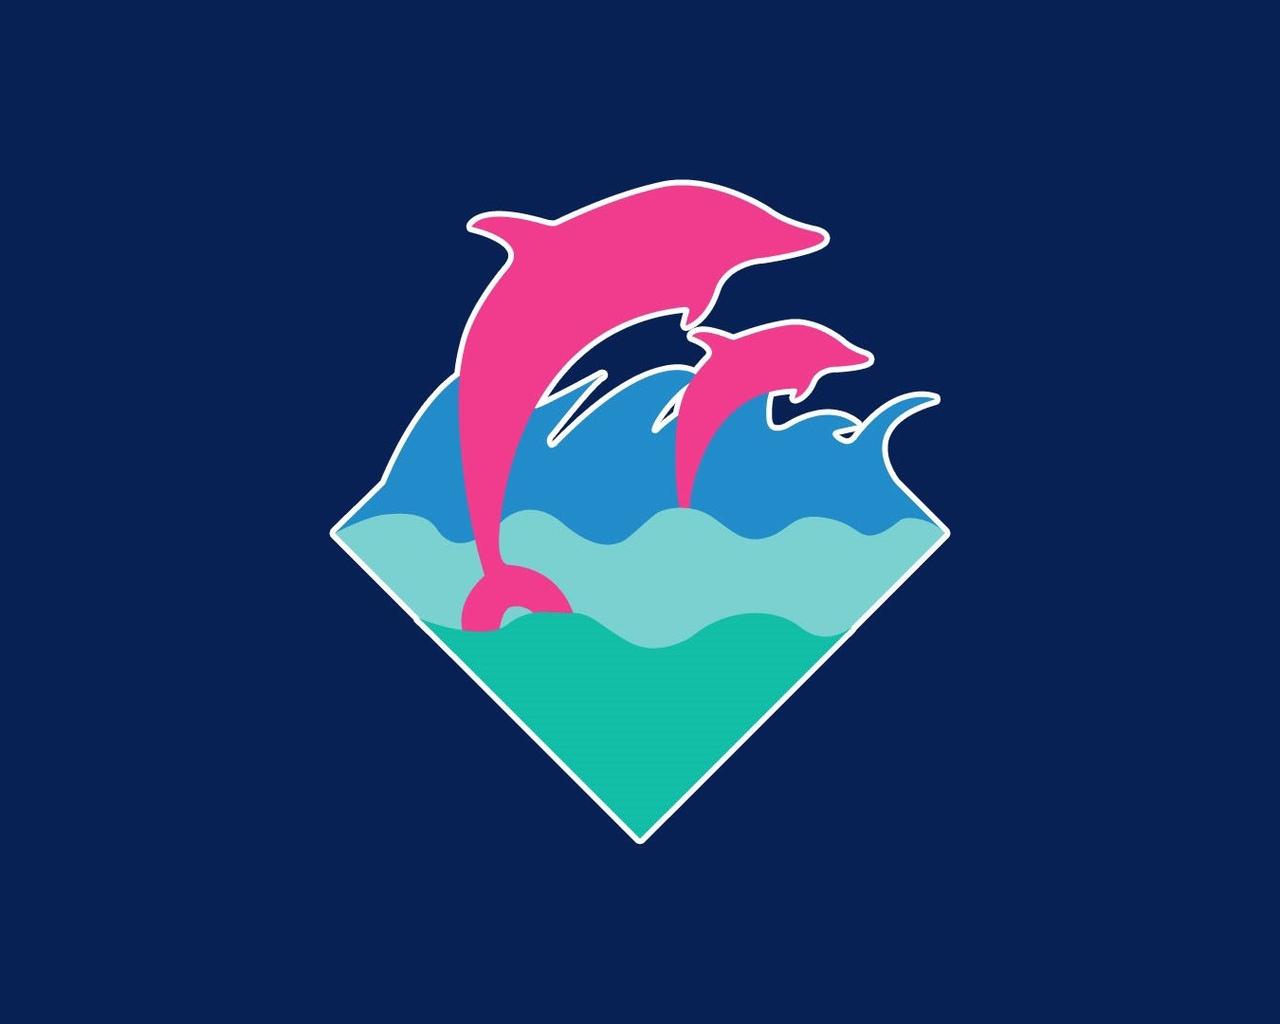 Картинка: Дельфины, прыжок, вода, море, волны, синий фон